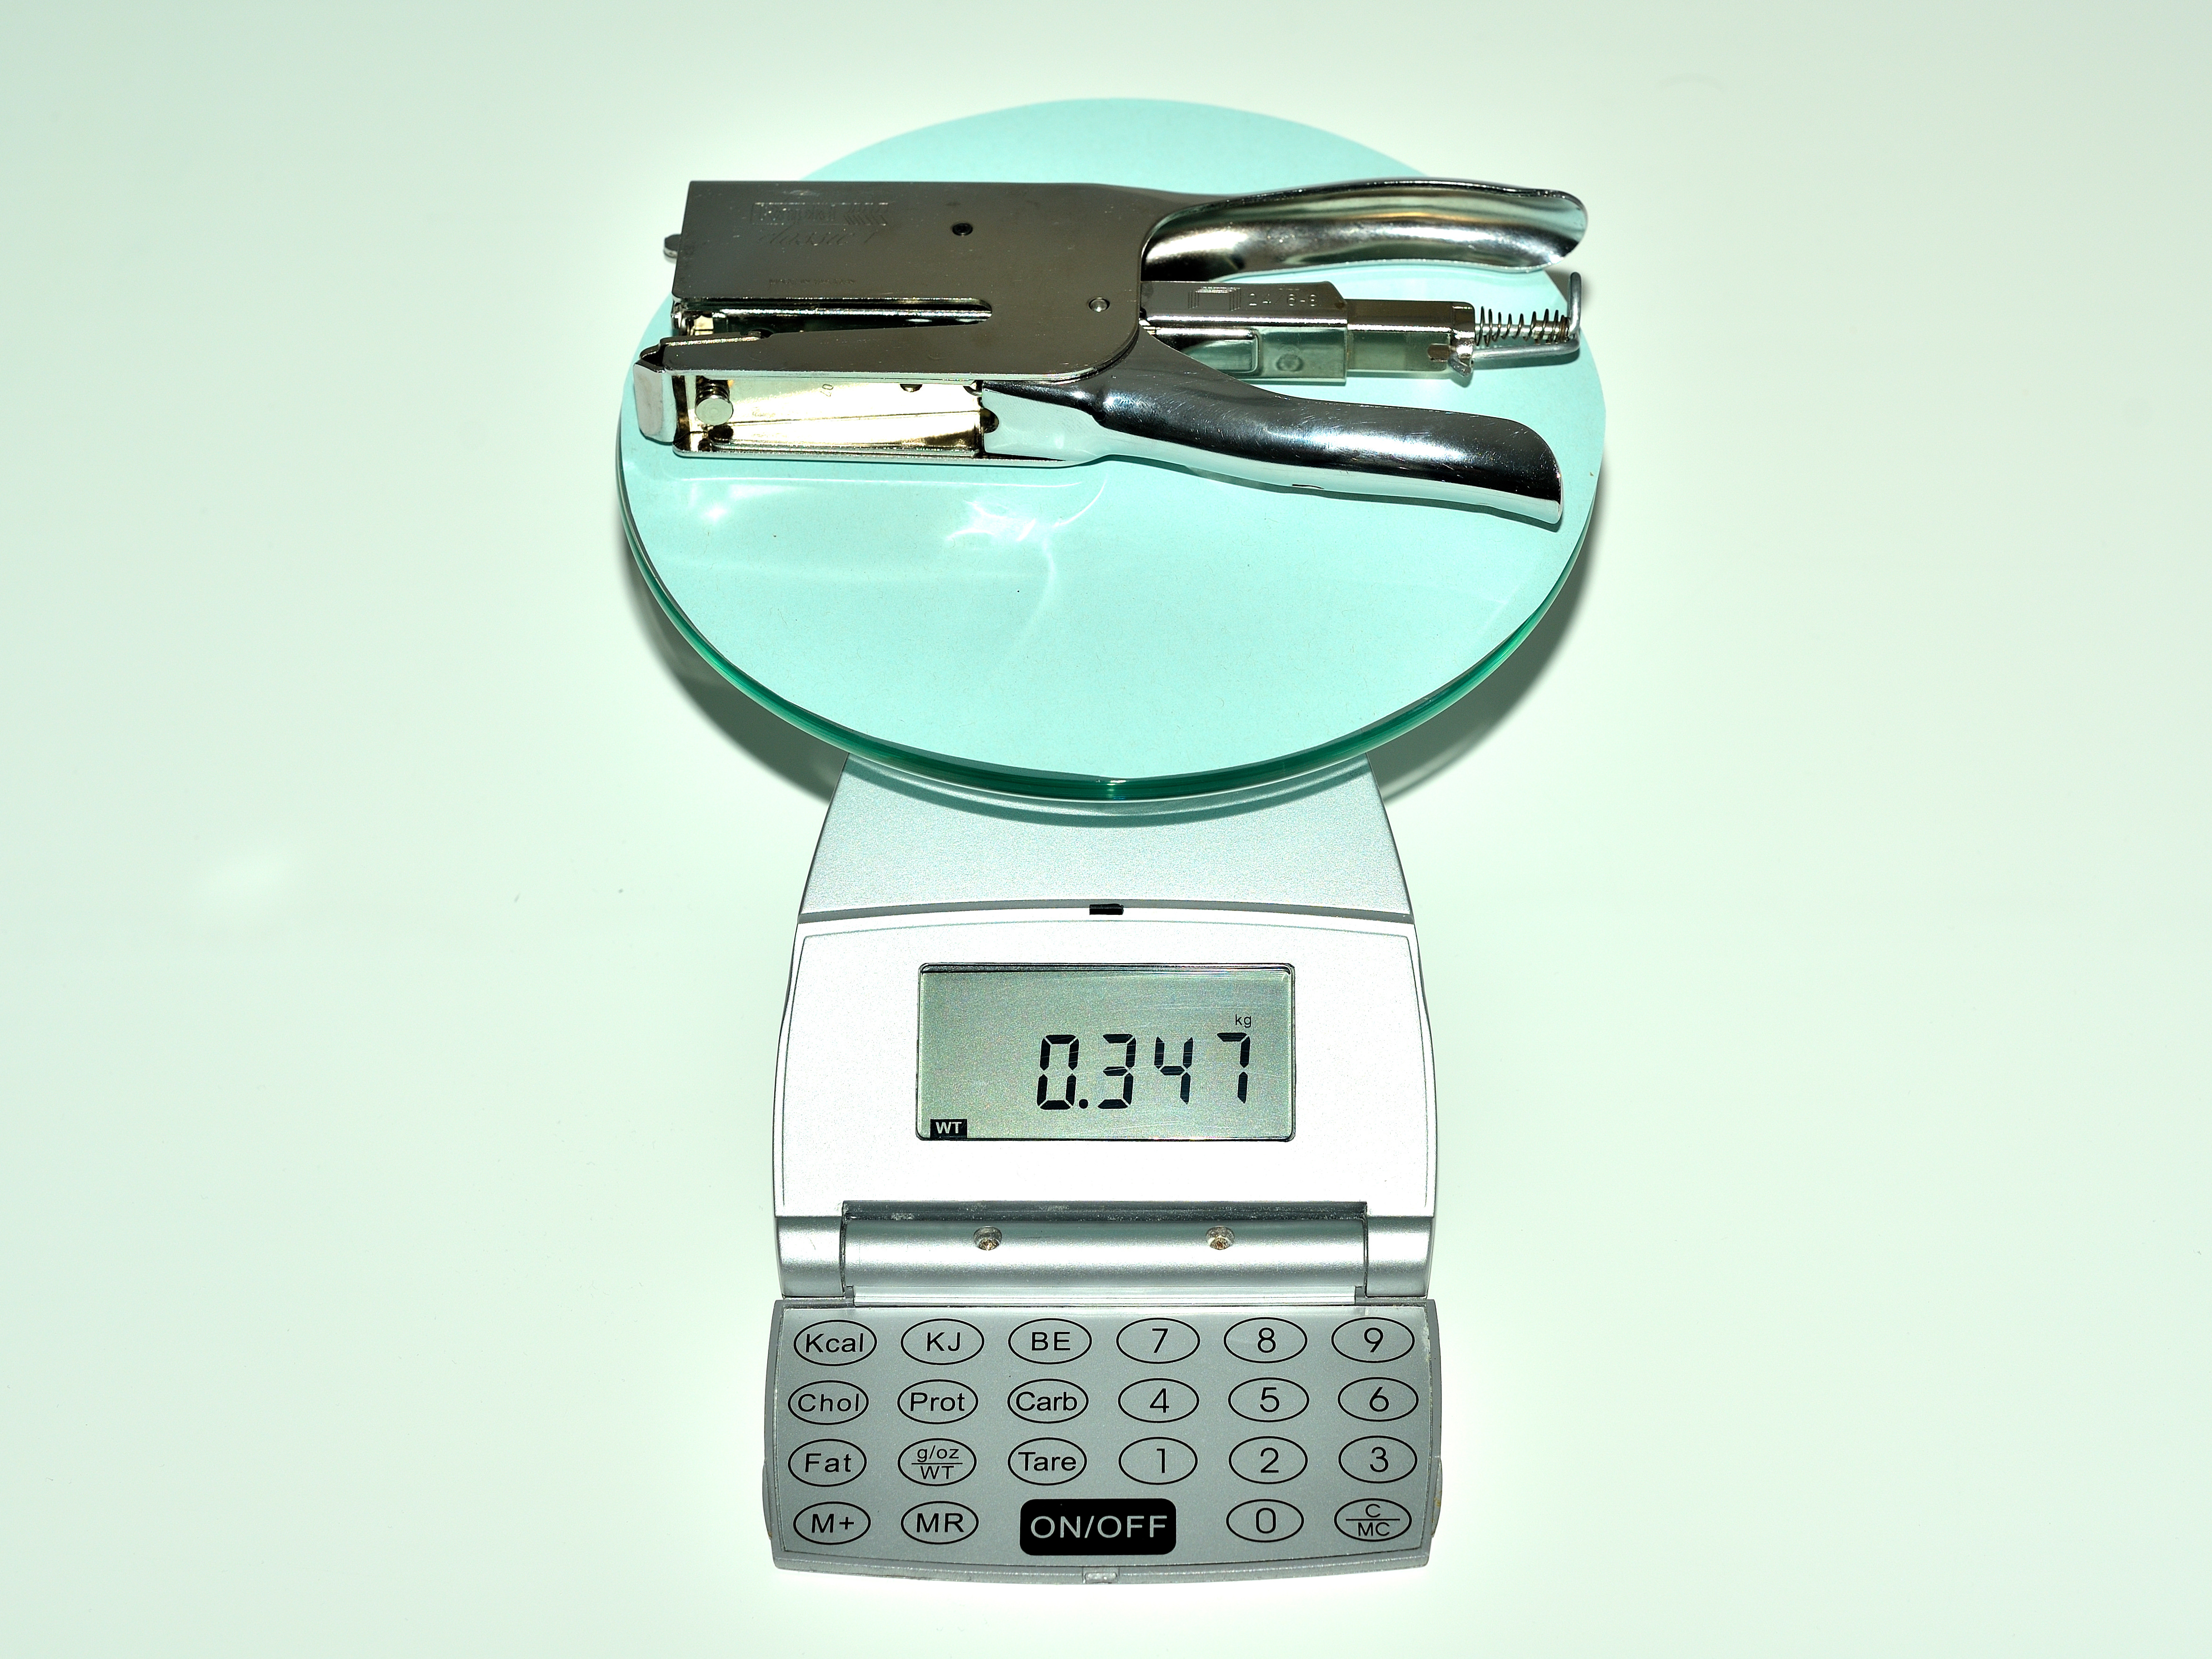 La imagen muestra una báscula, sobre la cual hay una grapadora metálica, que pesa 347 gramos